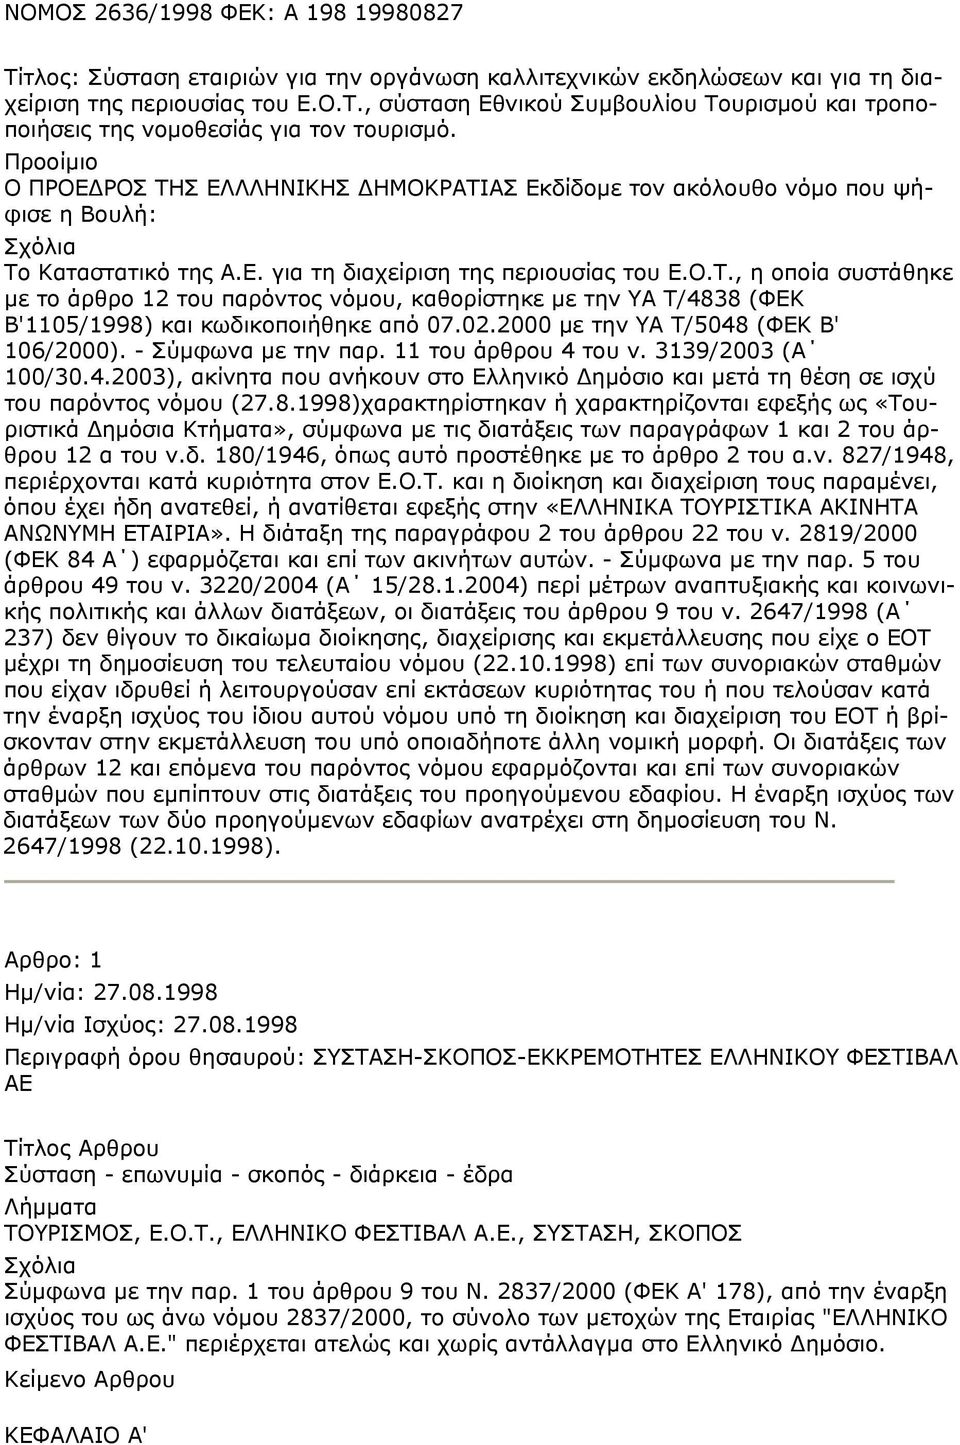 02.2000 με την ΥΑ Τ/5048 (ΦΕΚ Β' 106/2000). - Σύμφωνα με την παρ. 11 του άρθρου 4 του ν. 3139/2003 (Α 100/30.4.2003), ακίνητα που ανήκουν στο Ελληνικό Δημόσιο και μετά τη θέση σε ισχύ του παρόντος νόμου (27.